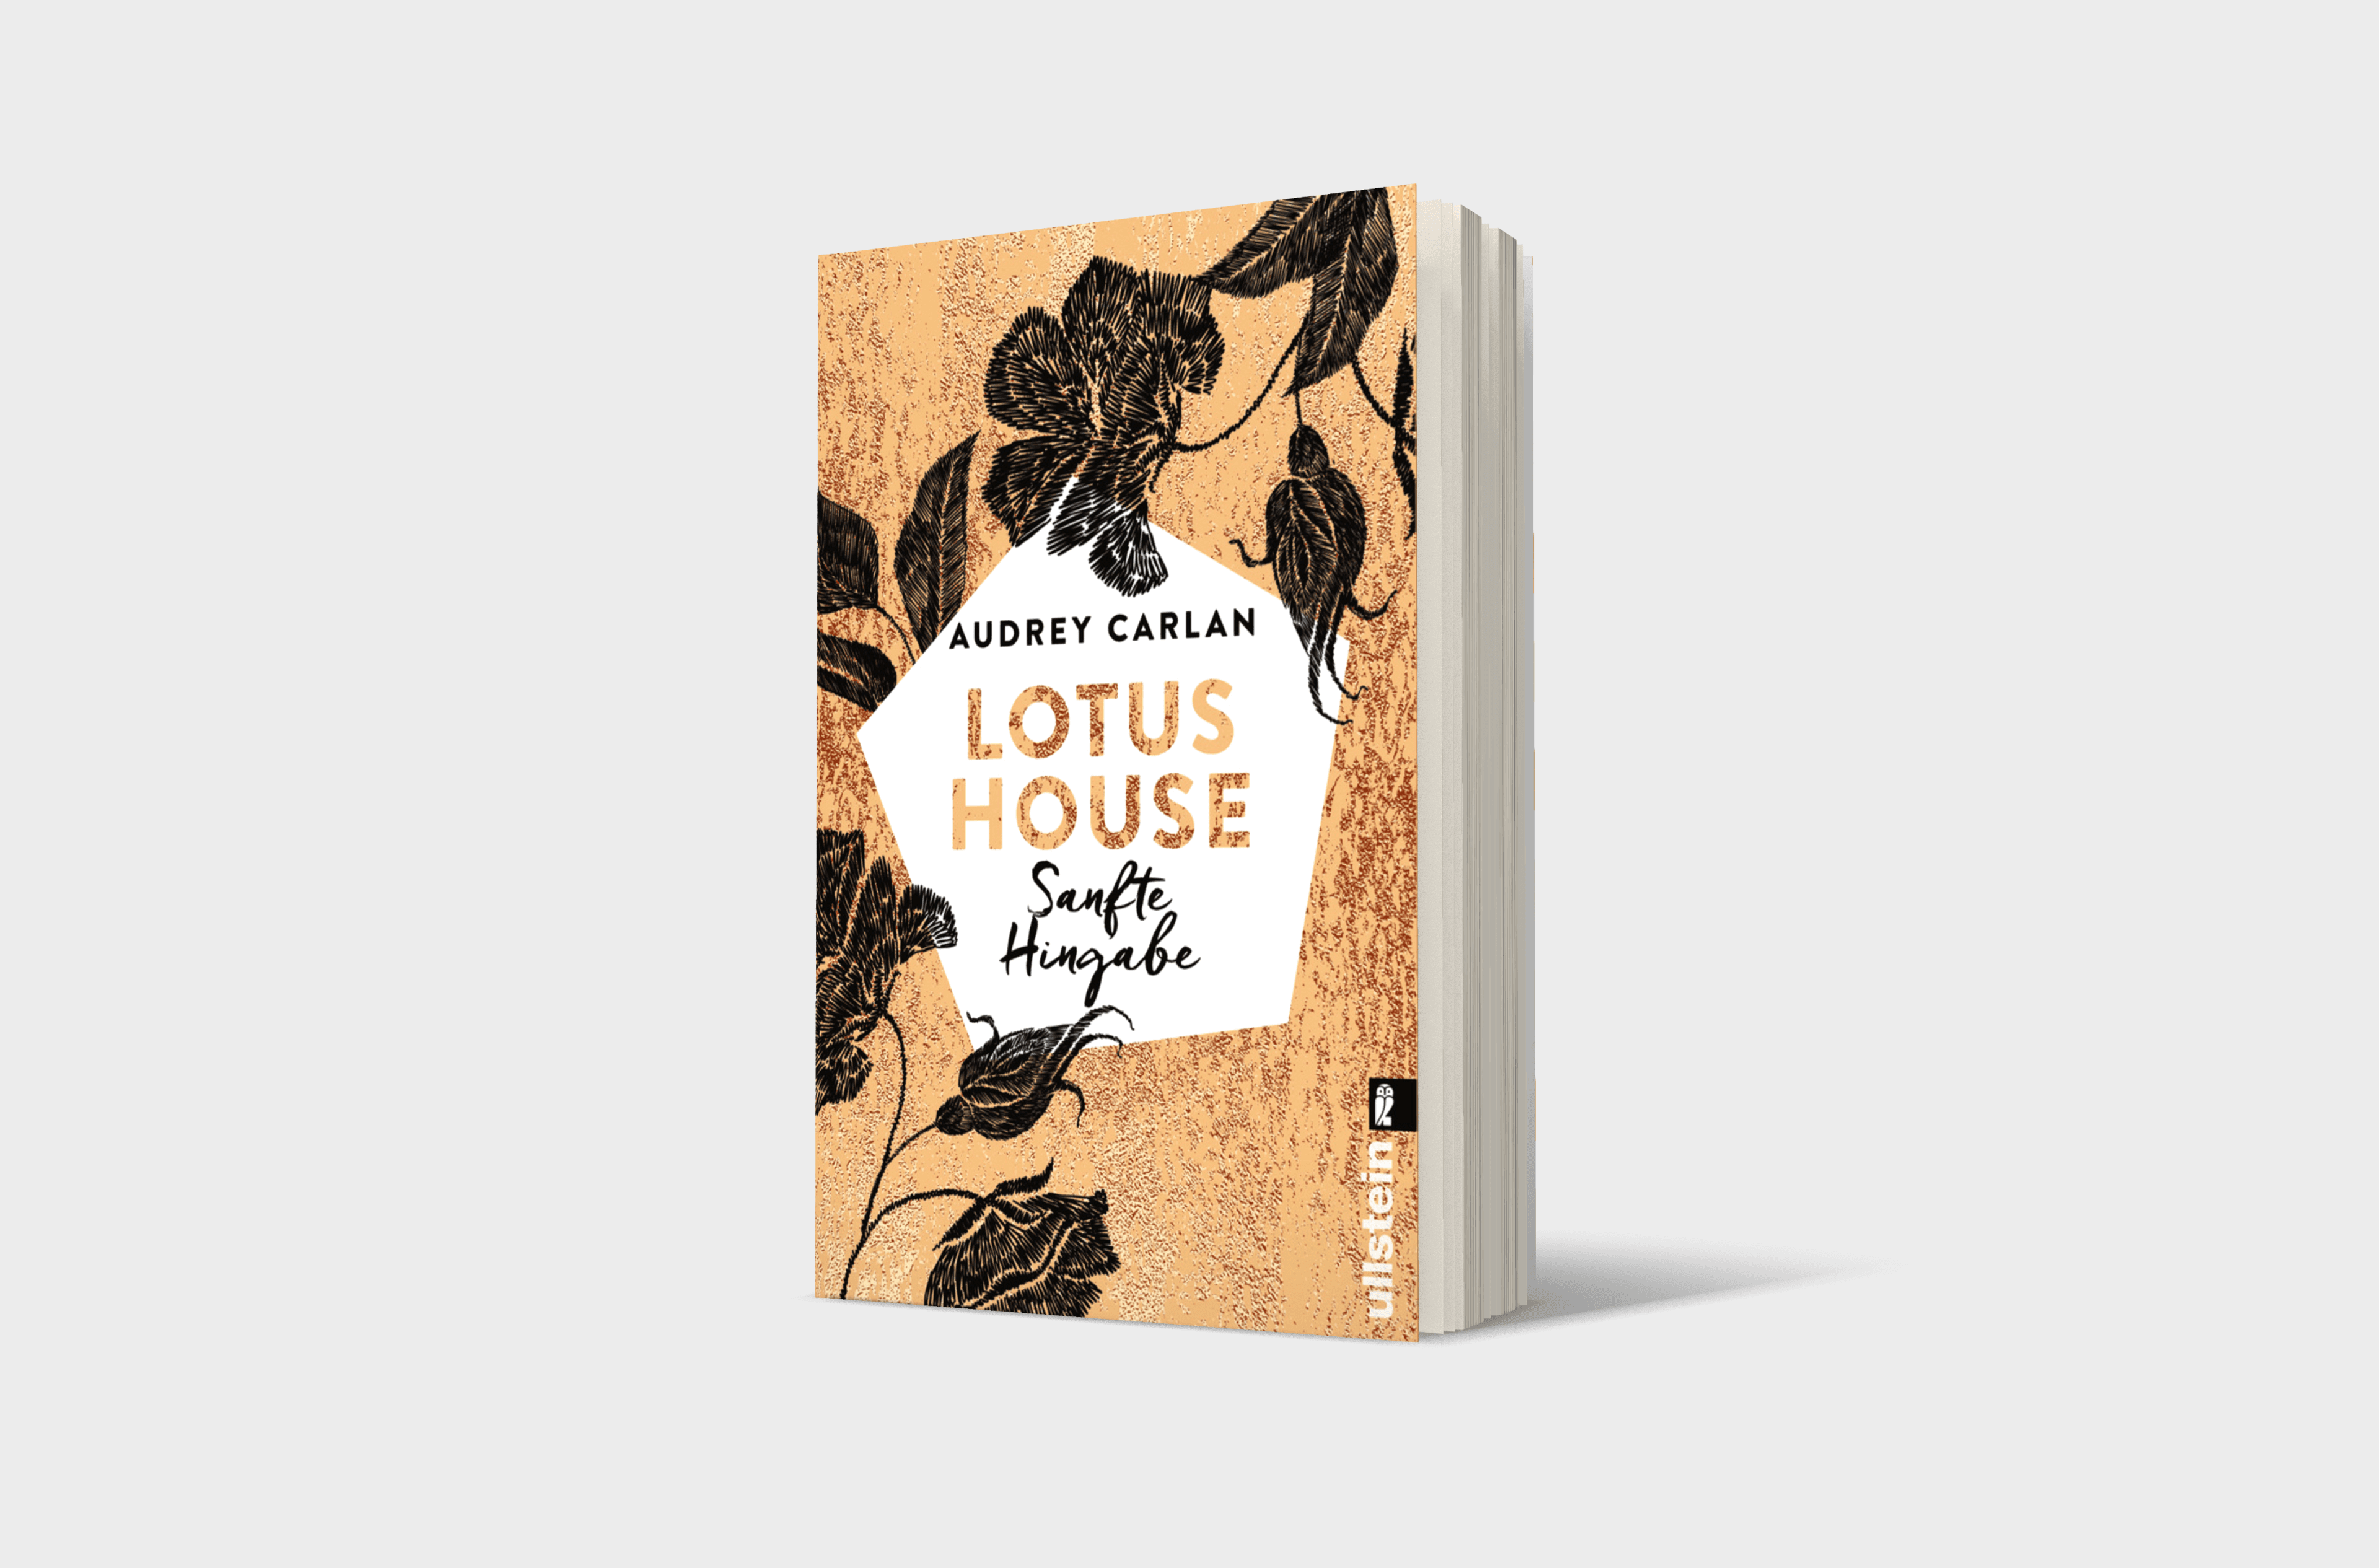 Buchcover von Lotus House - Sanfte Hingabe (Die Lotus House-Serie 2)